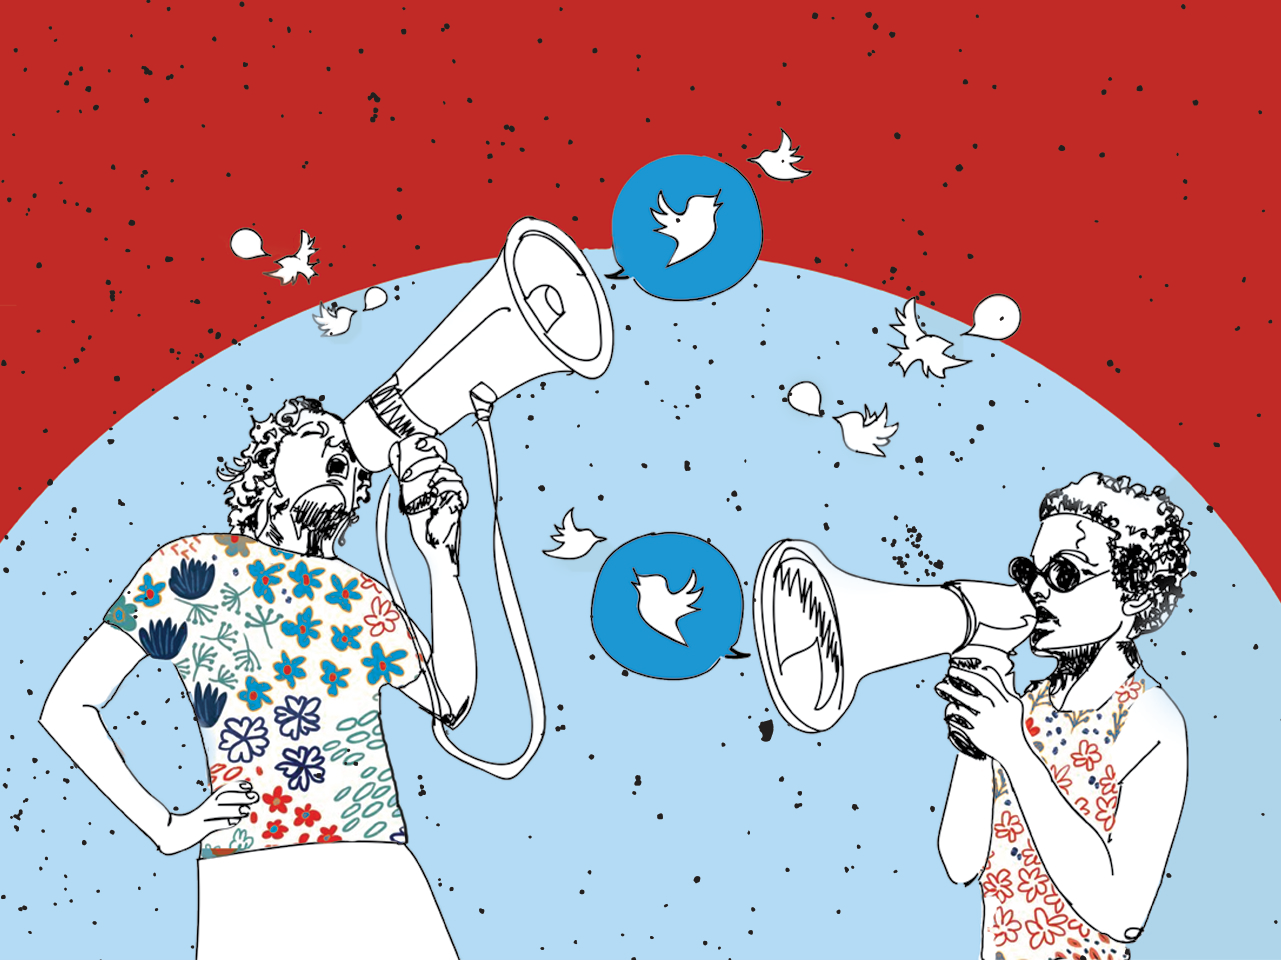 Estudo liga Twitter a diminuição do bem-estar e aumento da polarização, da indignação e do tédio